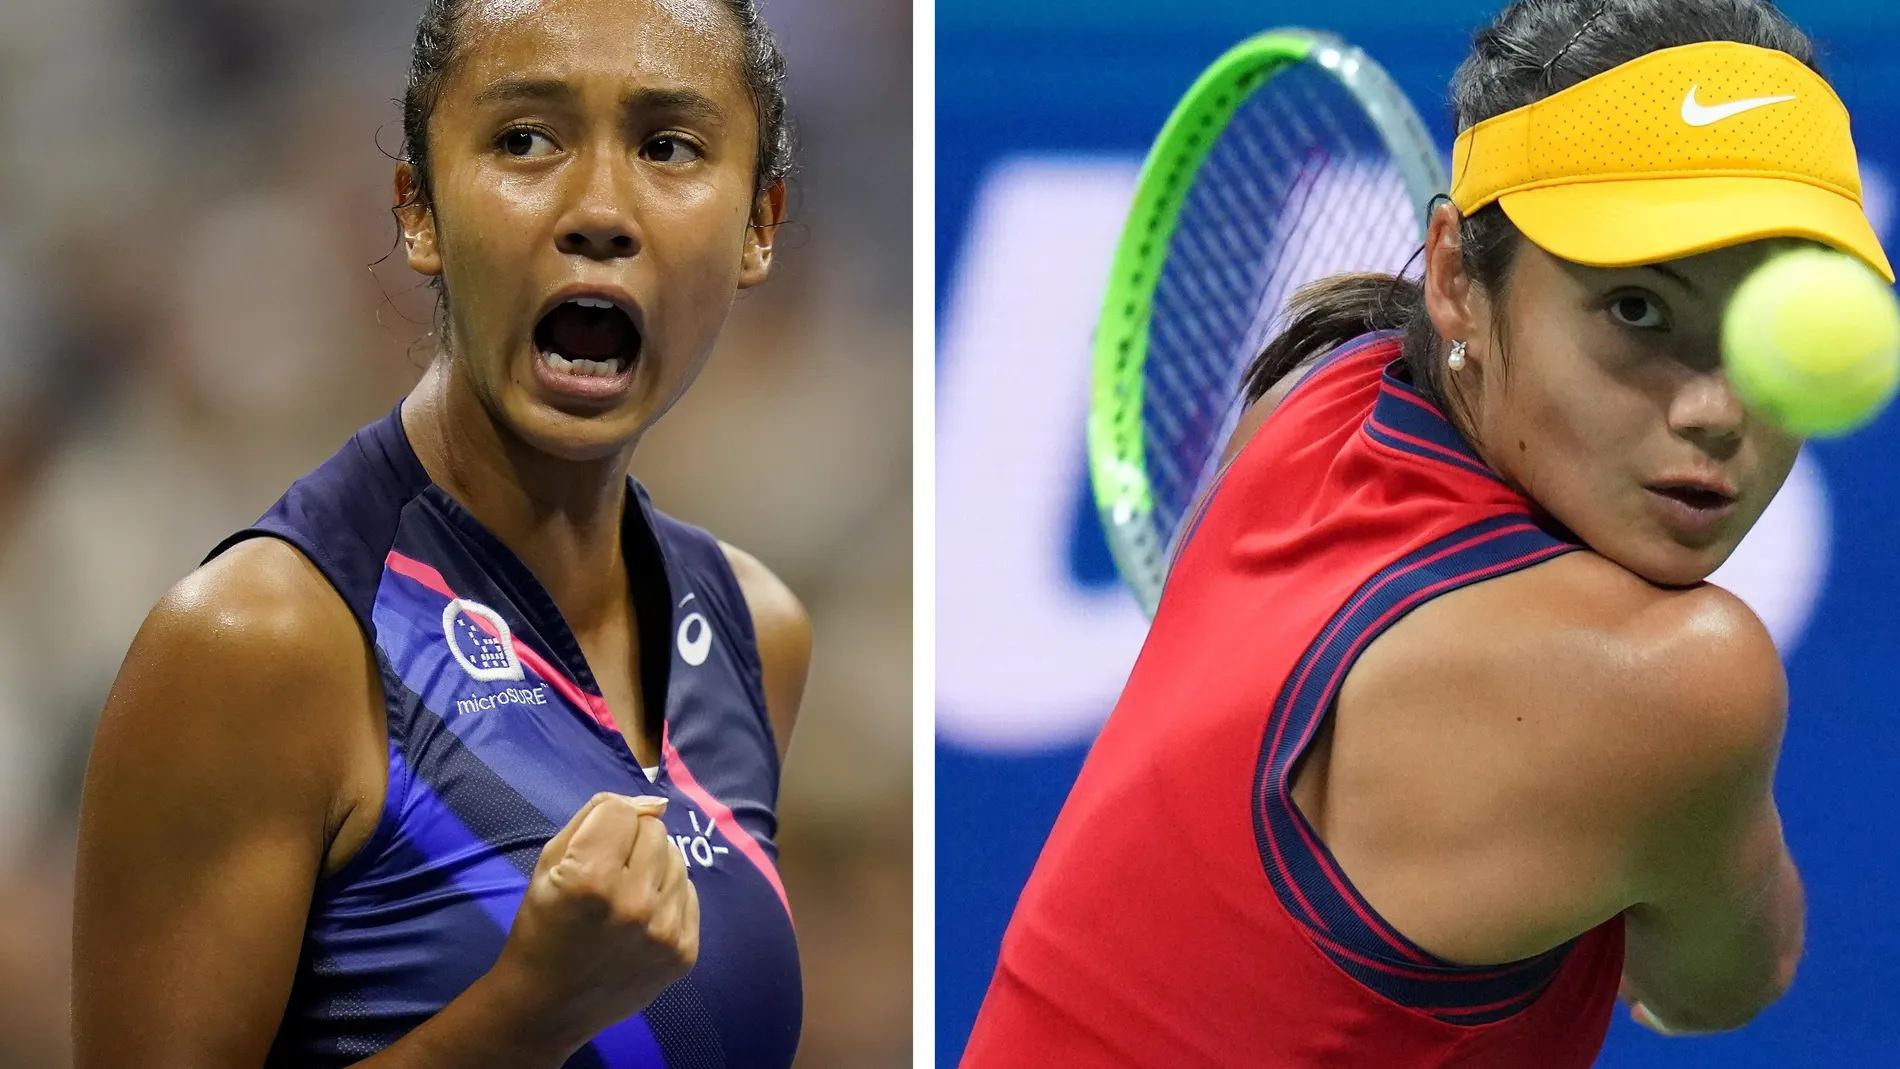 Leylah Fernández y Emma Raducanu están impresionando al mundo en el US Open 2021